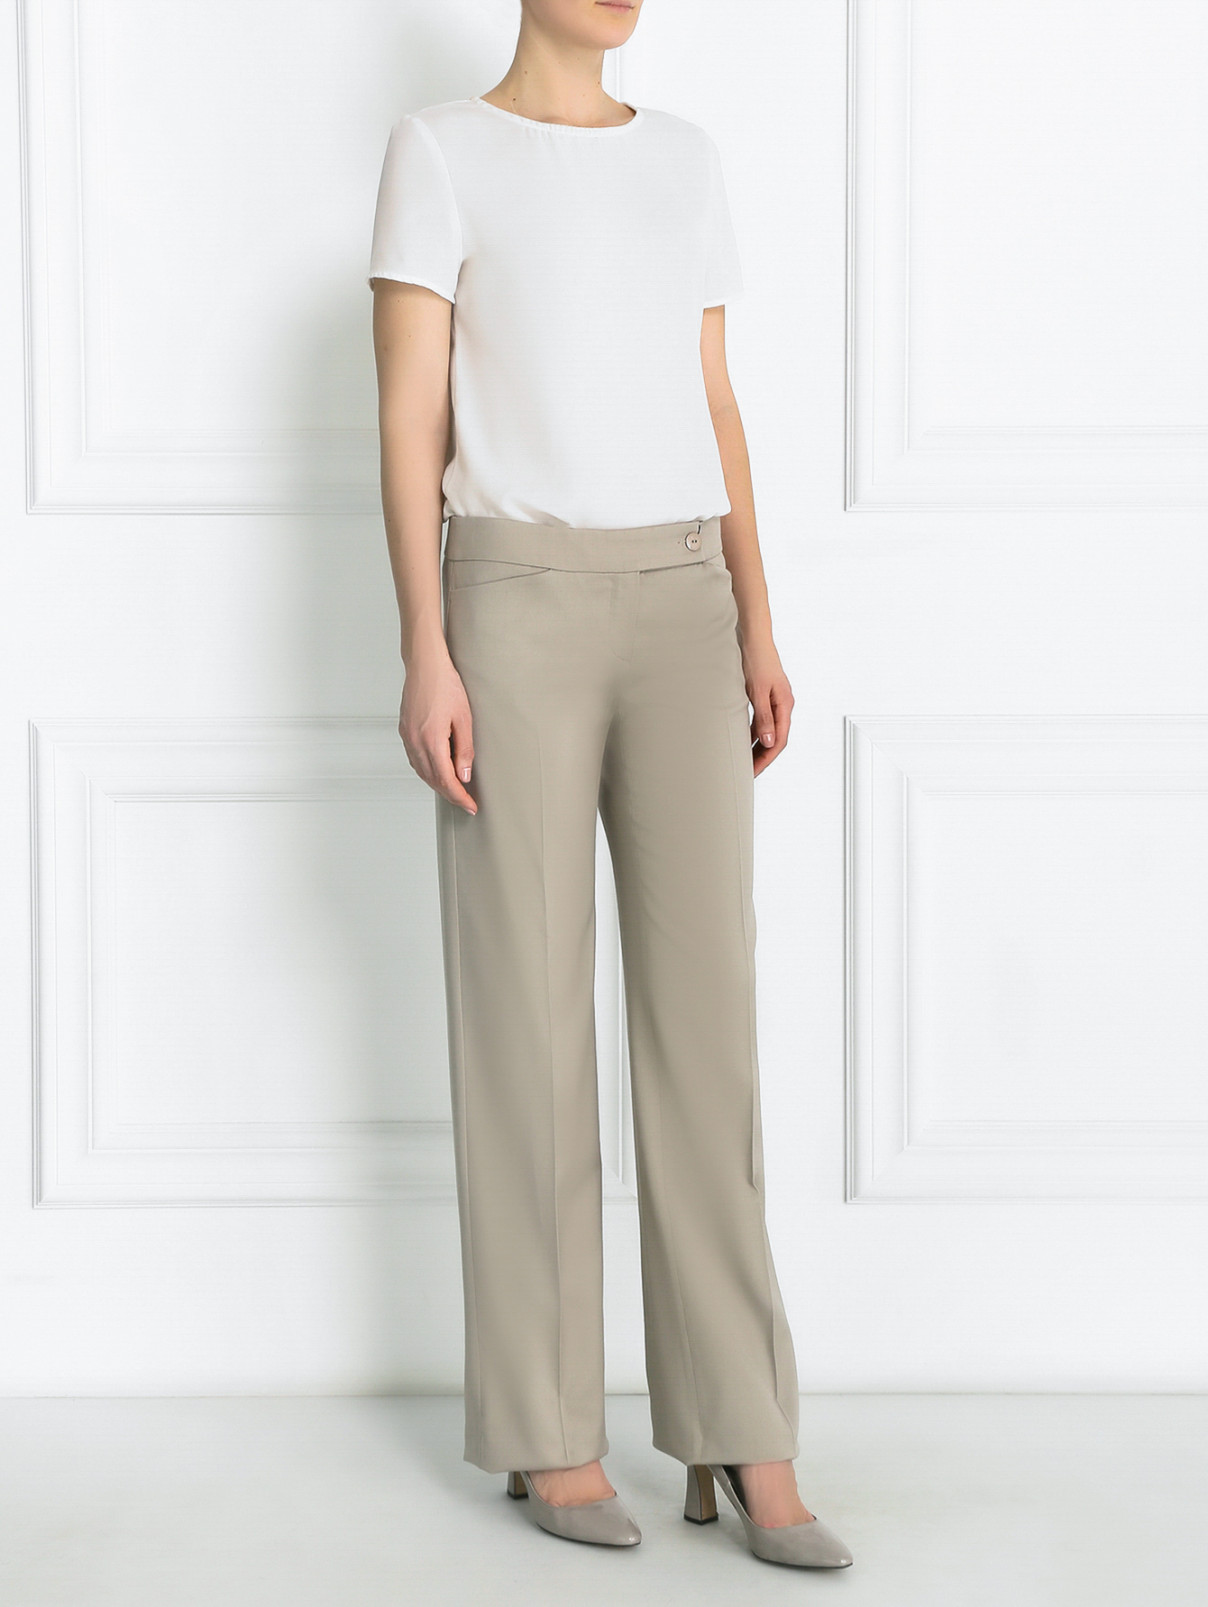 Широкие брюки из шерсти с карманами Emporio Armani  –  Модель Общий вид  – Цвет:  Бежевый